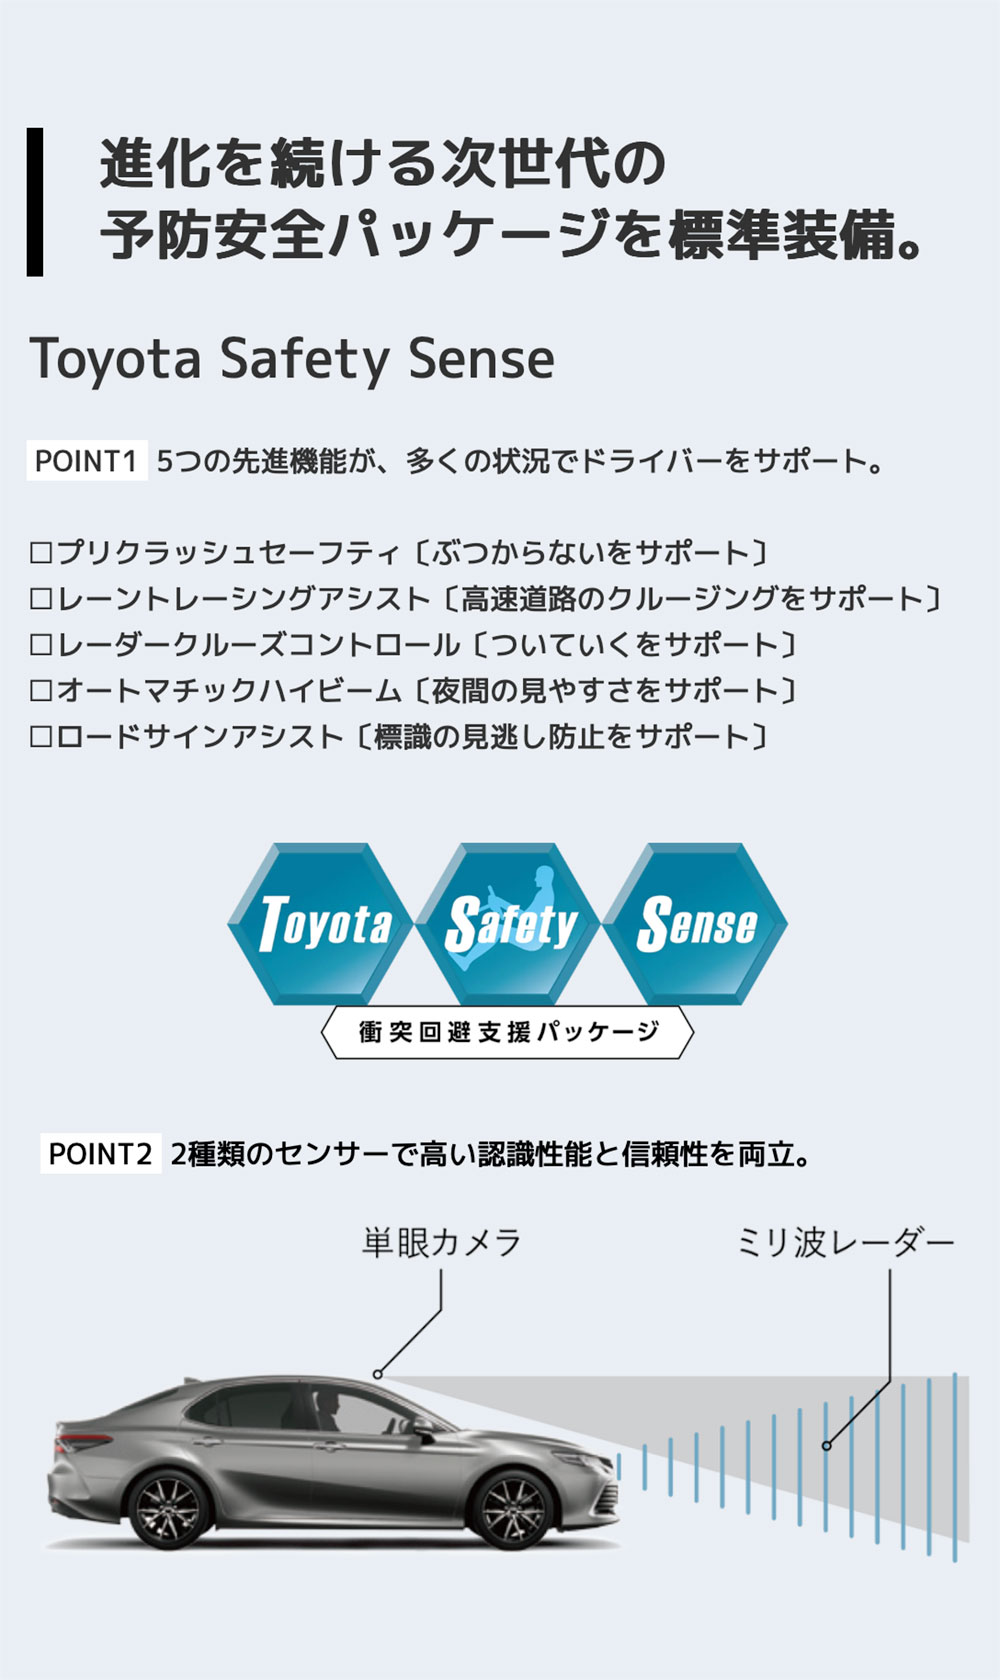 【Toyota Safety Sense】進化を続ける次世代の予防安全パッケージを標準装備。